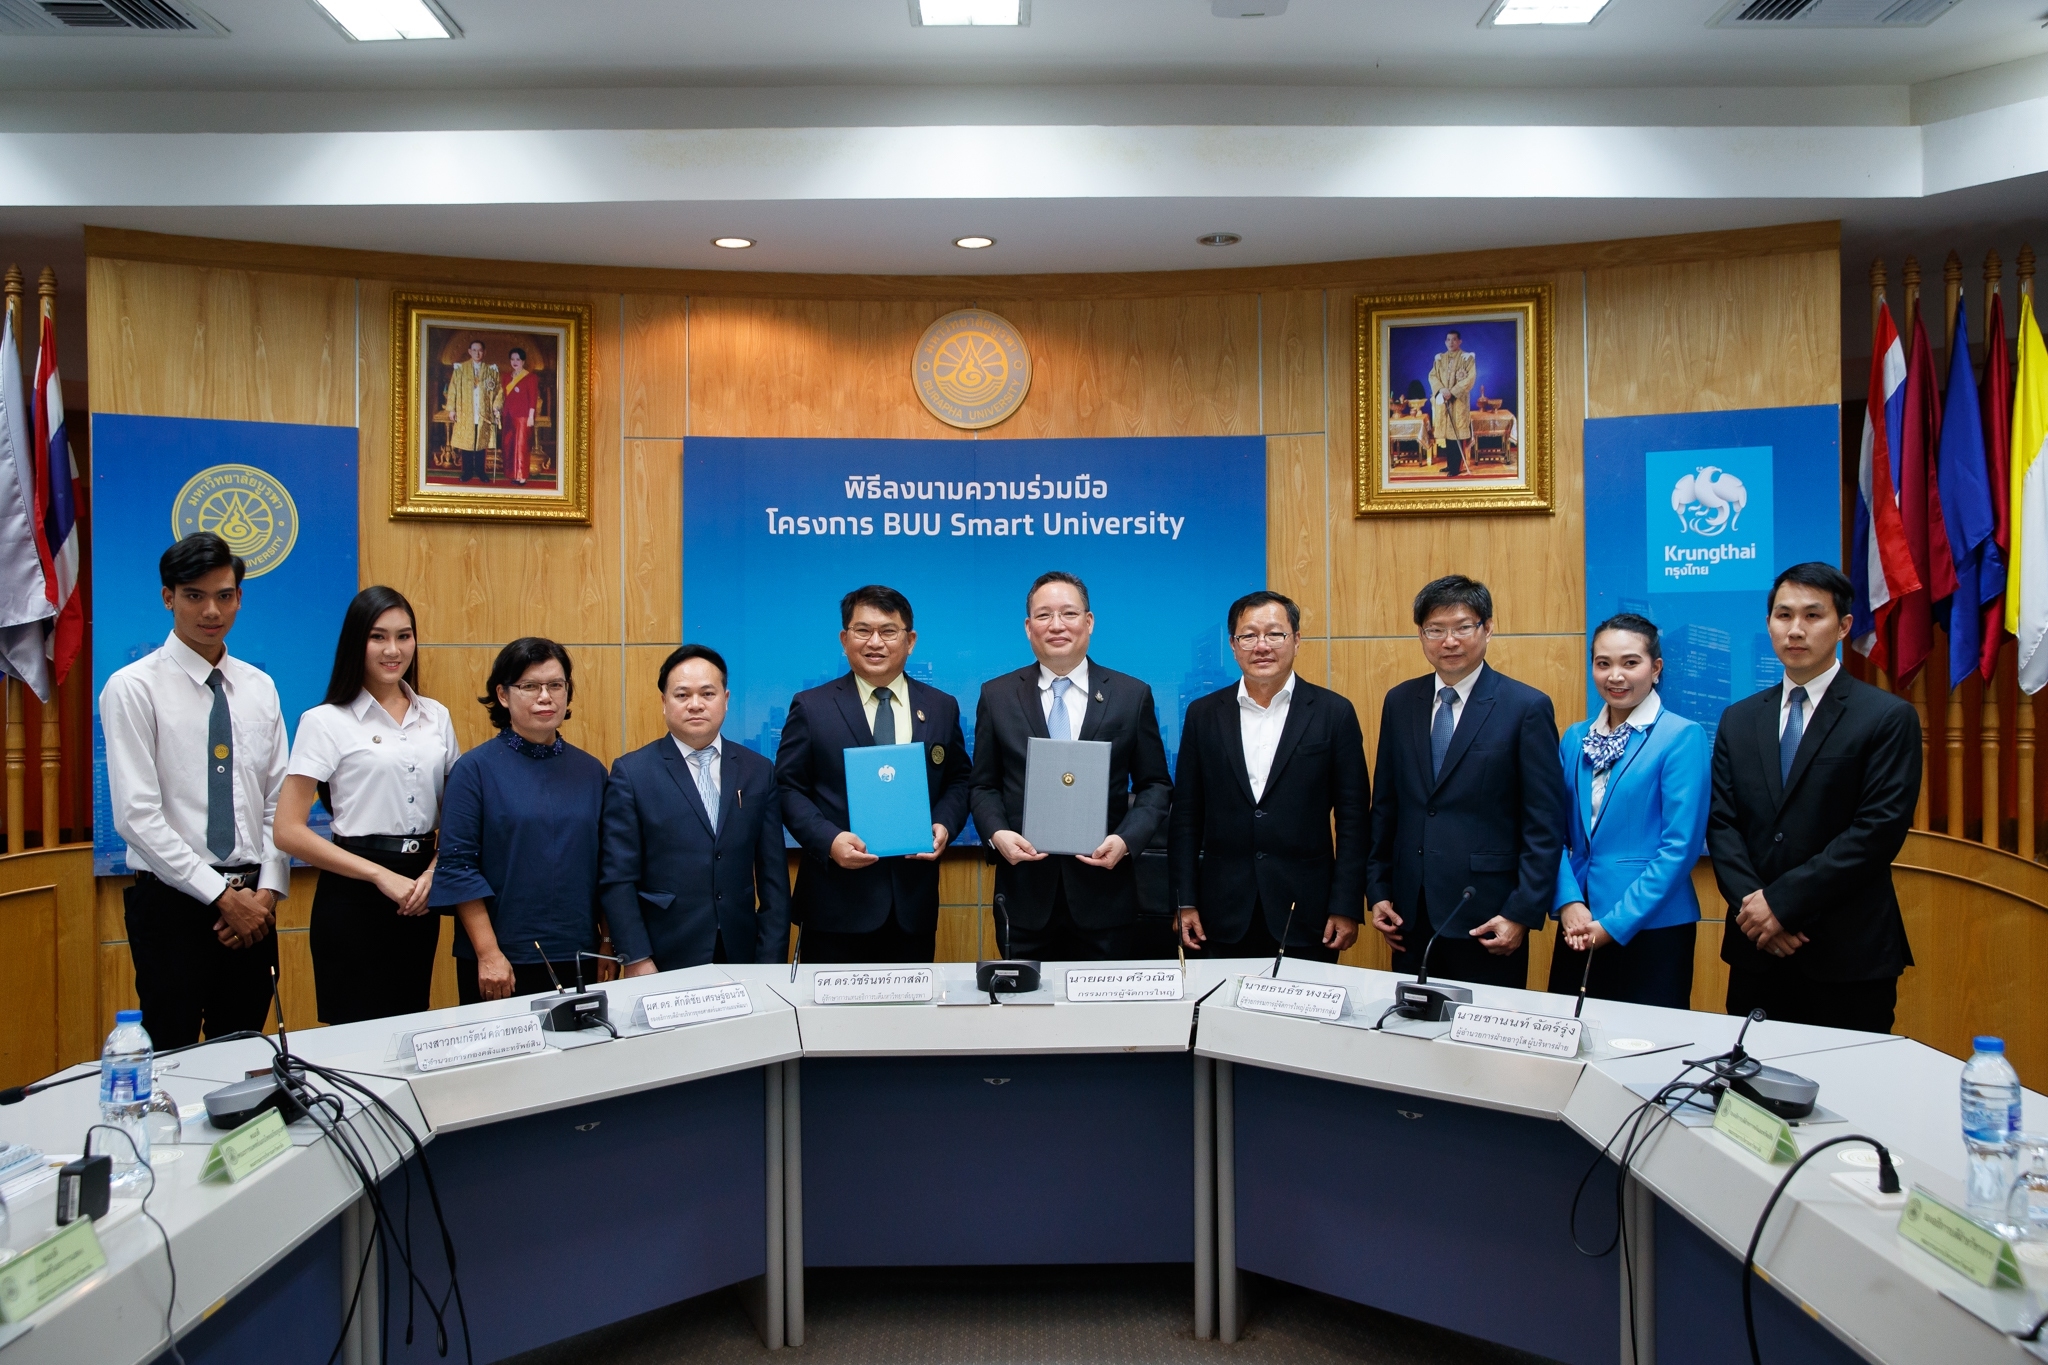 กรุงไทยจับมือมหาวิทยาลัยบูรพาพัฒนา Smart University